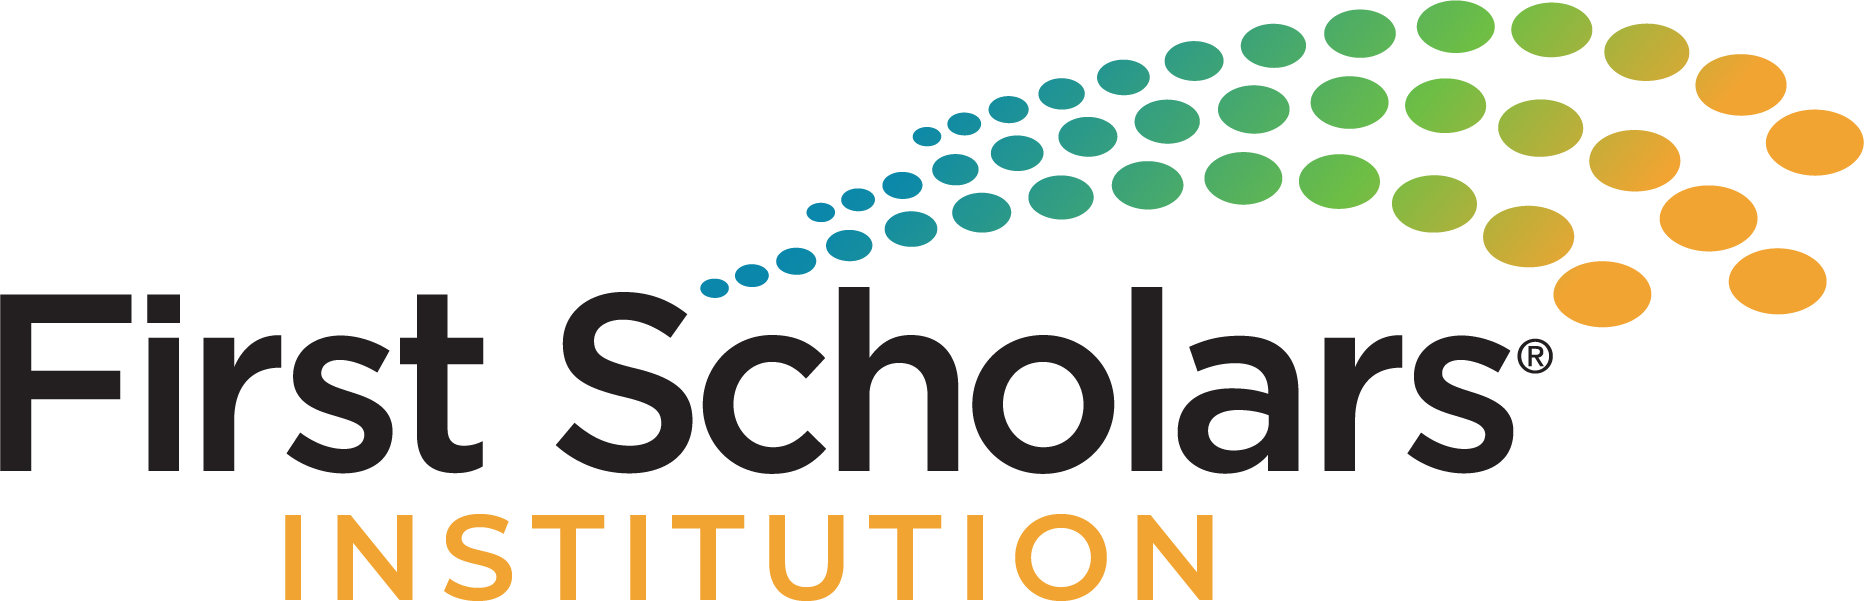 First Scholars Institution logo